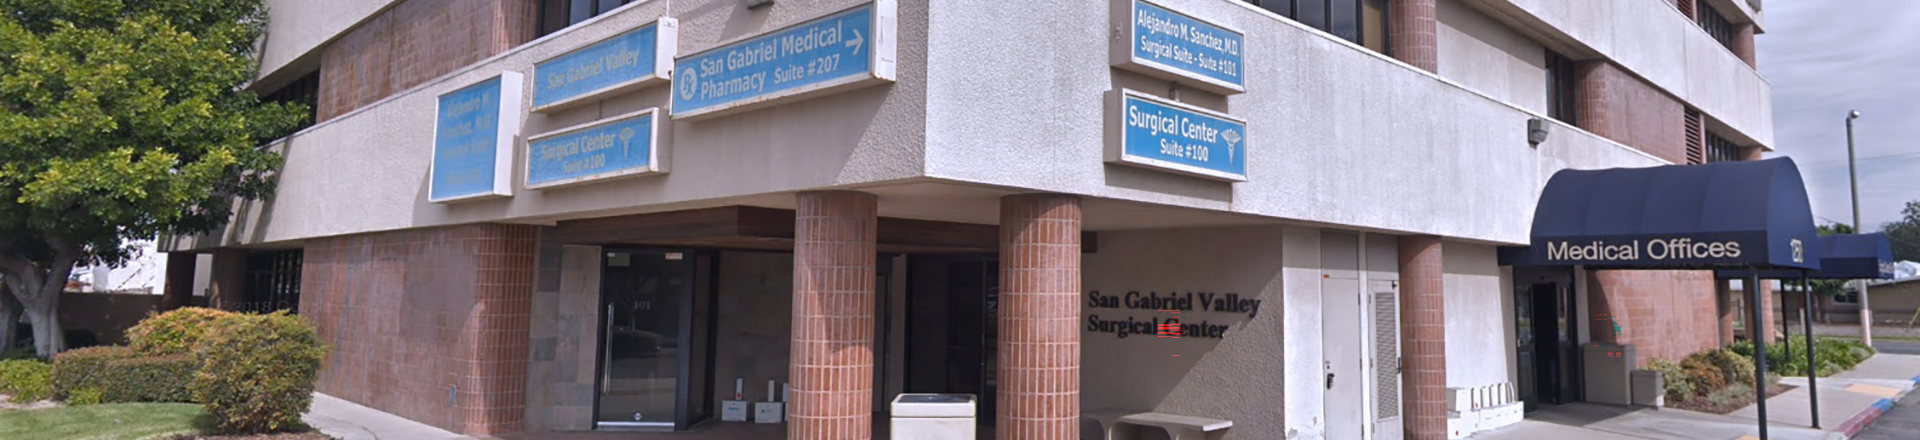 San Gabriel Valley Surgical Center